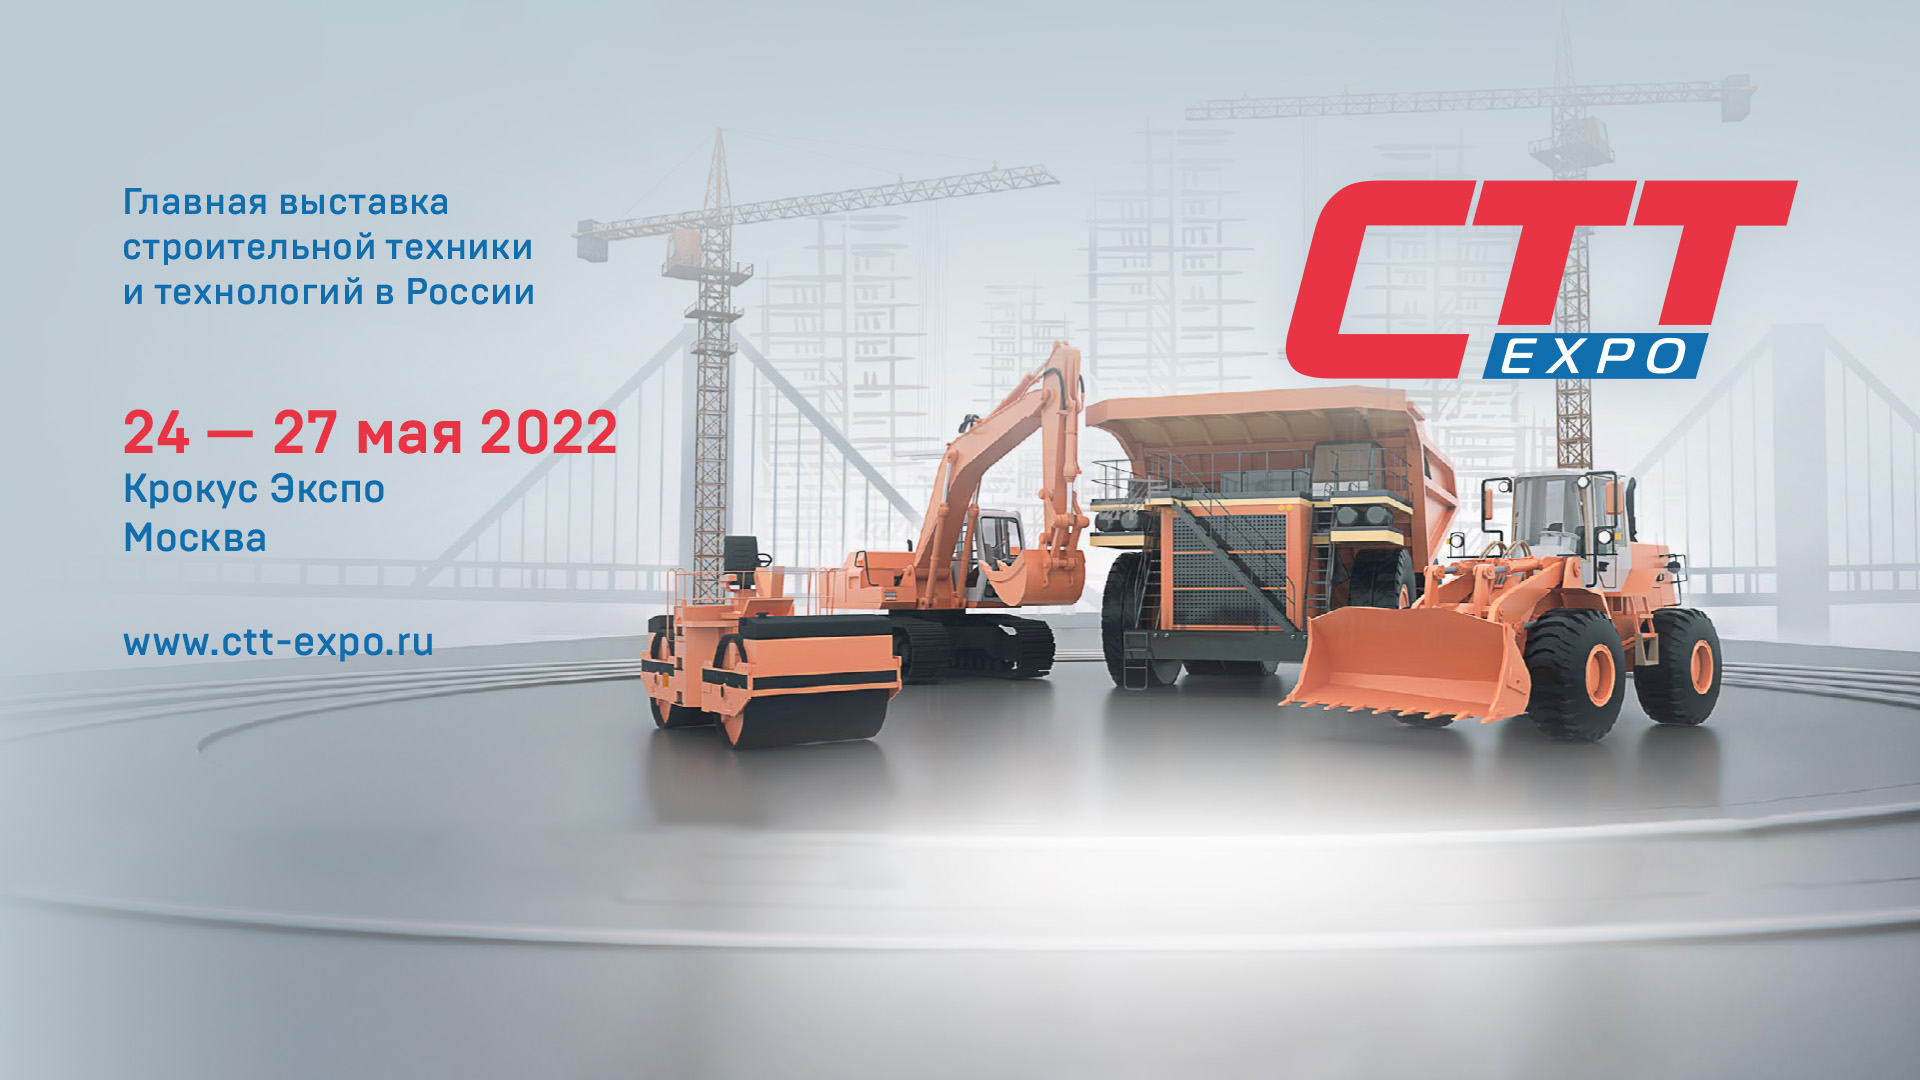 Приглашаем на CTT Expo 2022 - главную строительную выставку страны! 